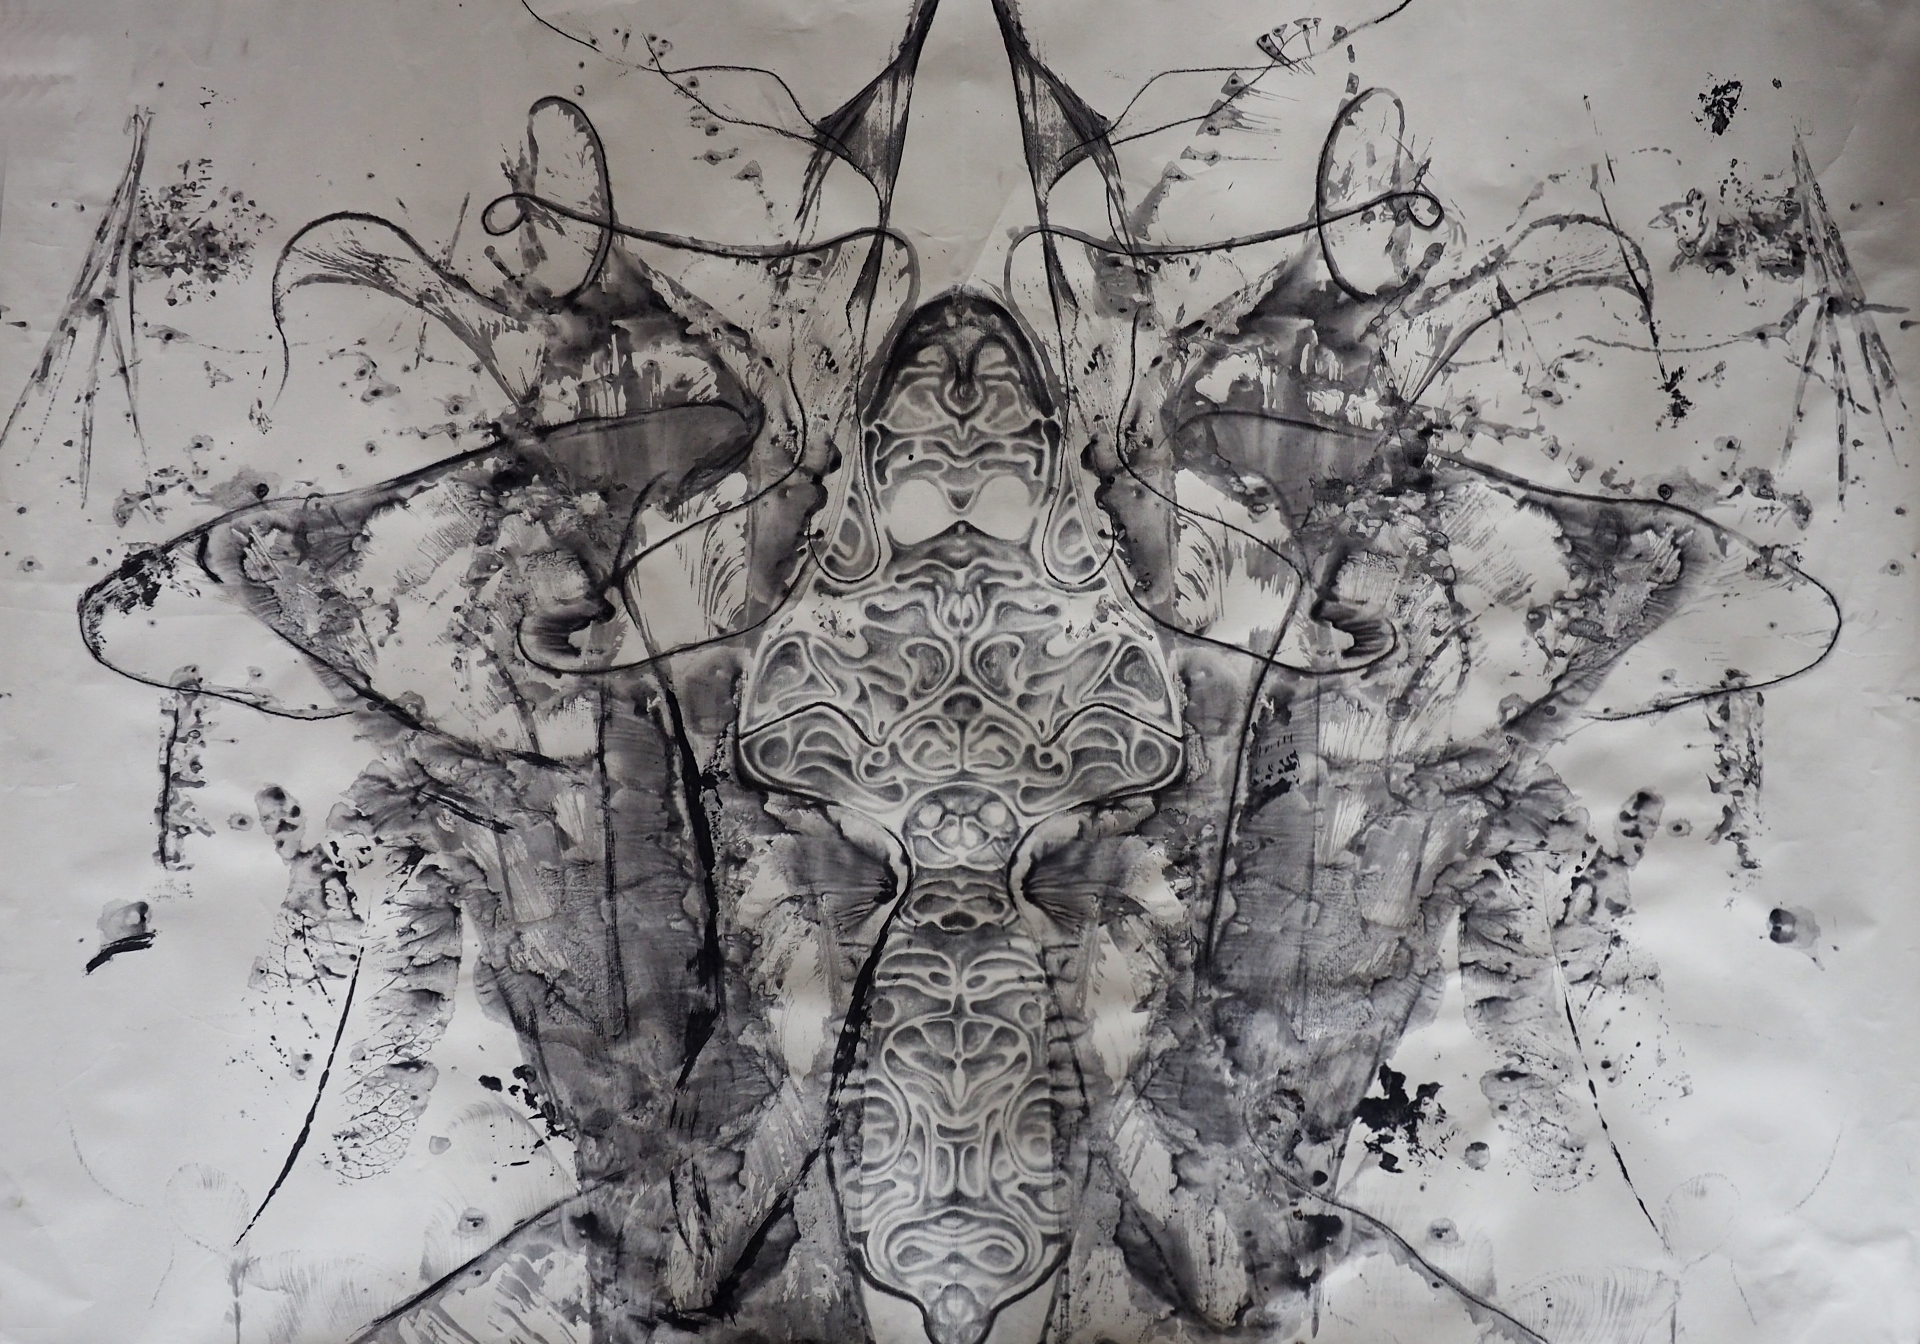 Rysunek abstrakcyjny wykonany z czarnych linii. Przypomina motyla. Animalistyczna forma jest w centralnej części obrazu. Całość jest symetryczna i przypomina lustrzane odbicie.